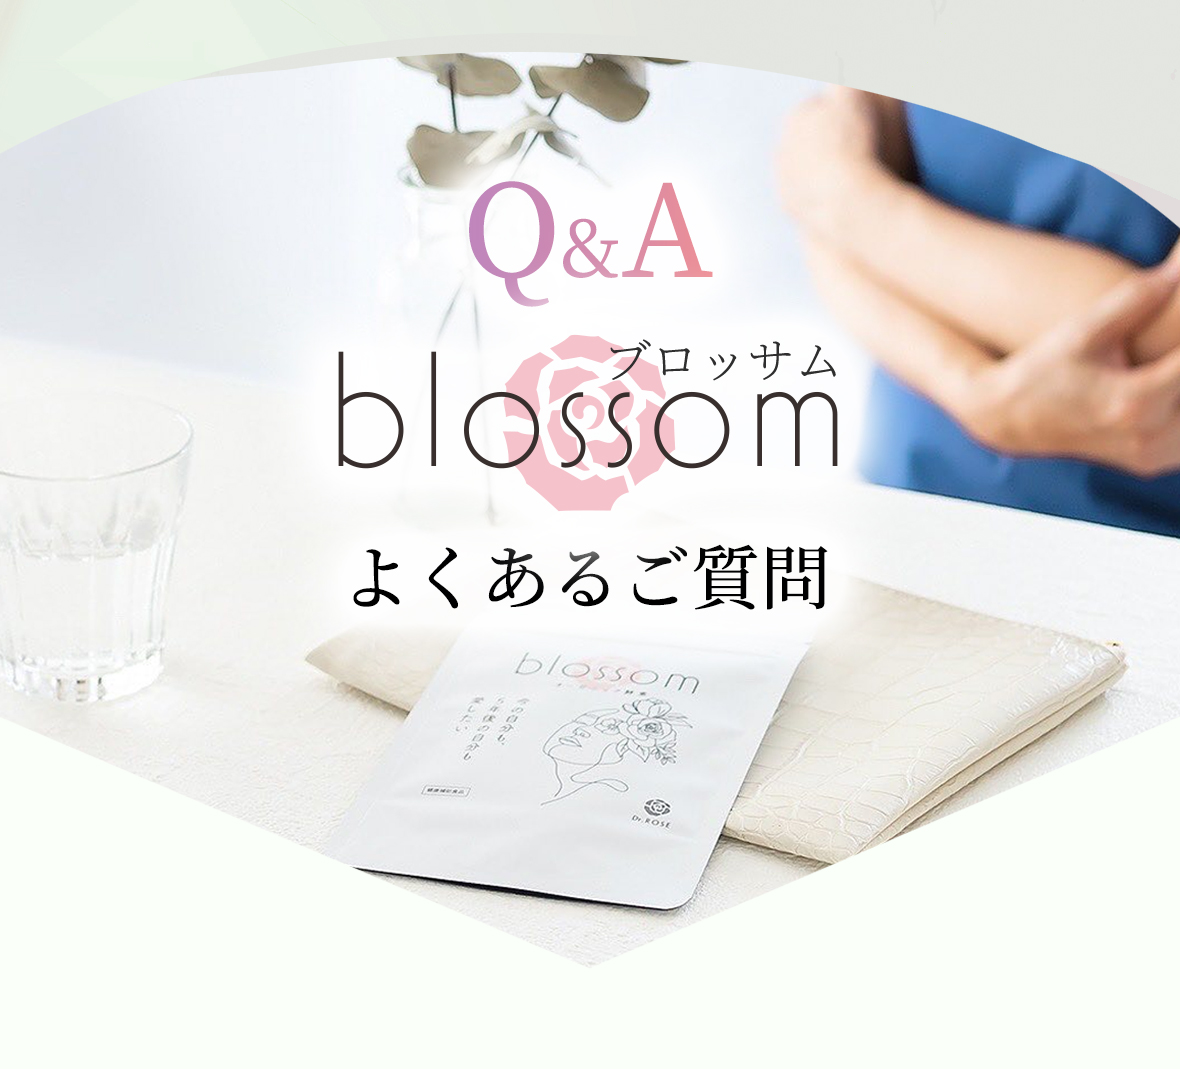 Q&A blossom(ブロッサム)へよくあるご質問